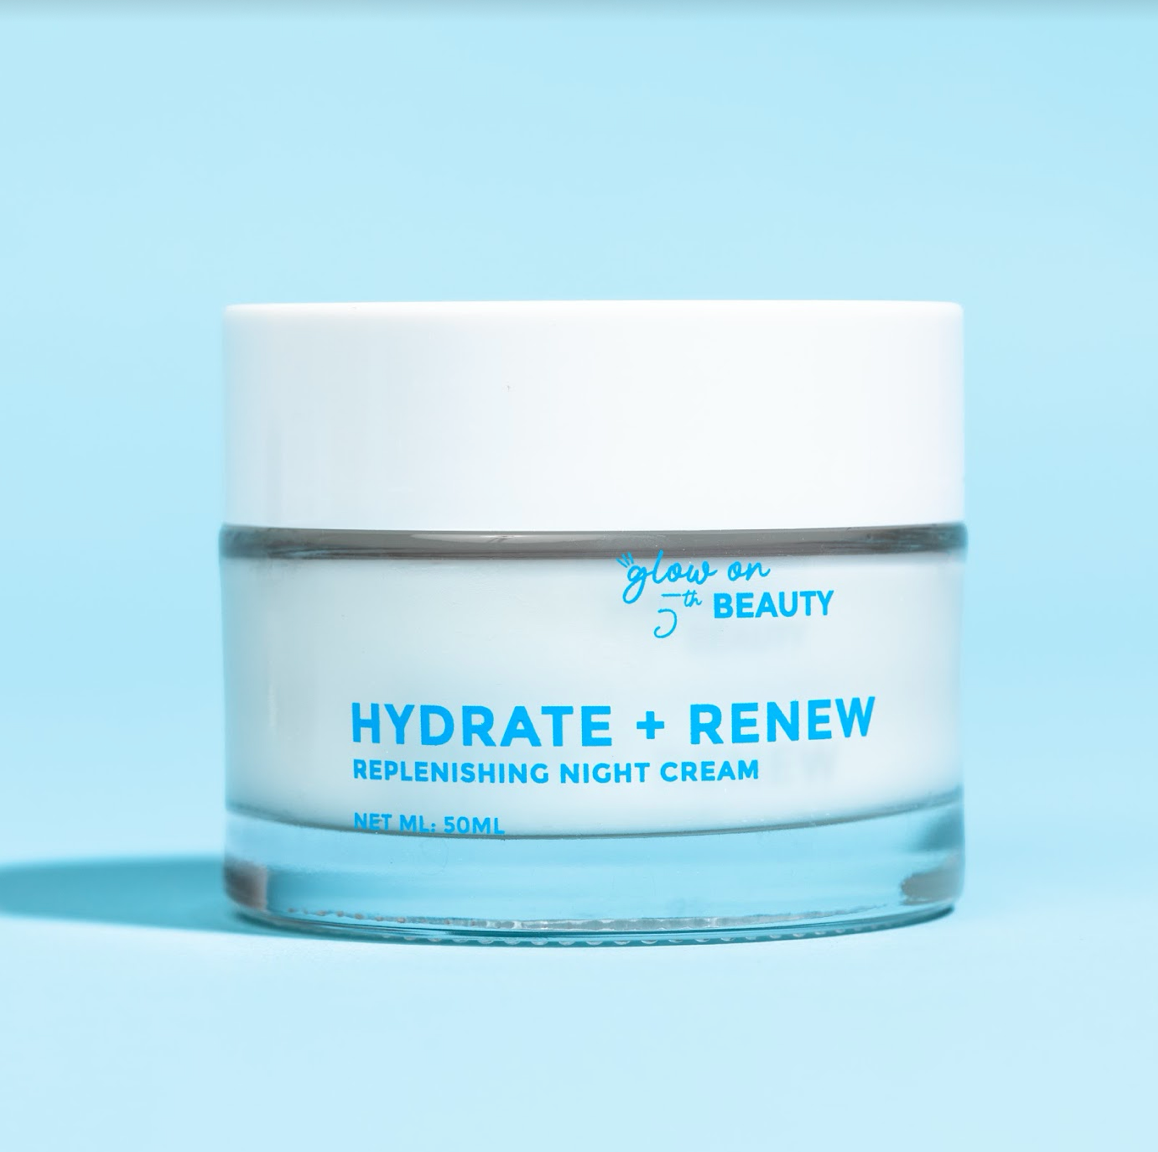 HYDRATE + RENEW - Replenishing Night Cream